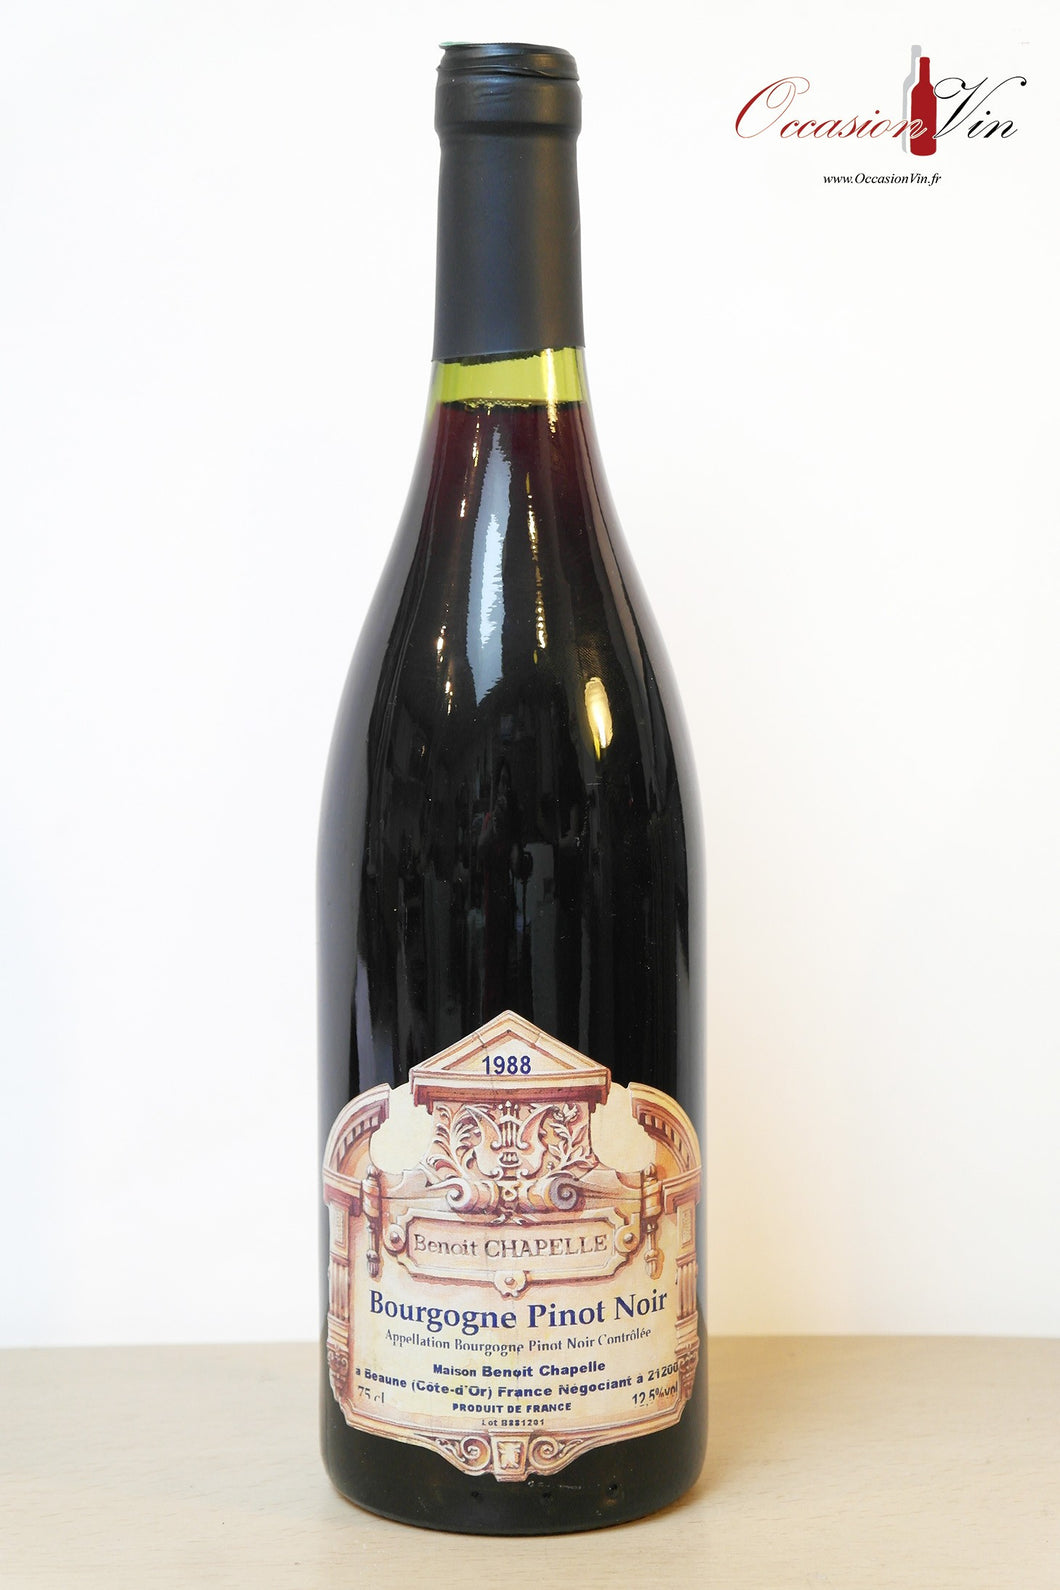 Bourgogne Pinot Noir Benoit Chapelle Vin 1988